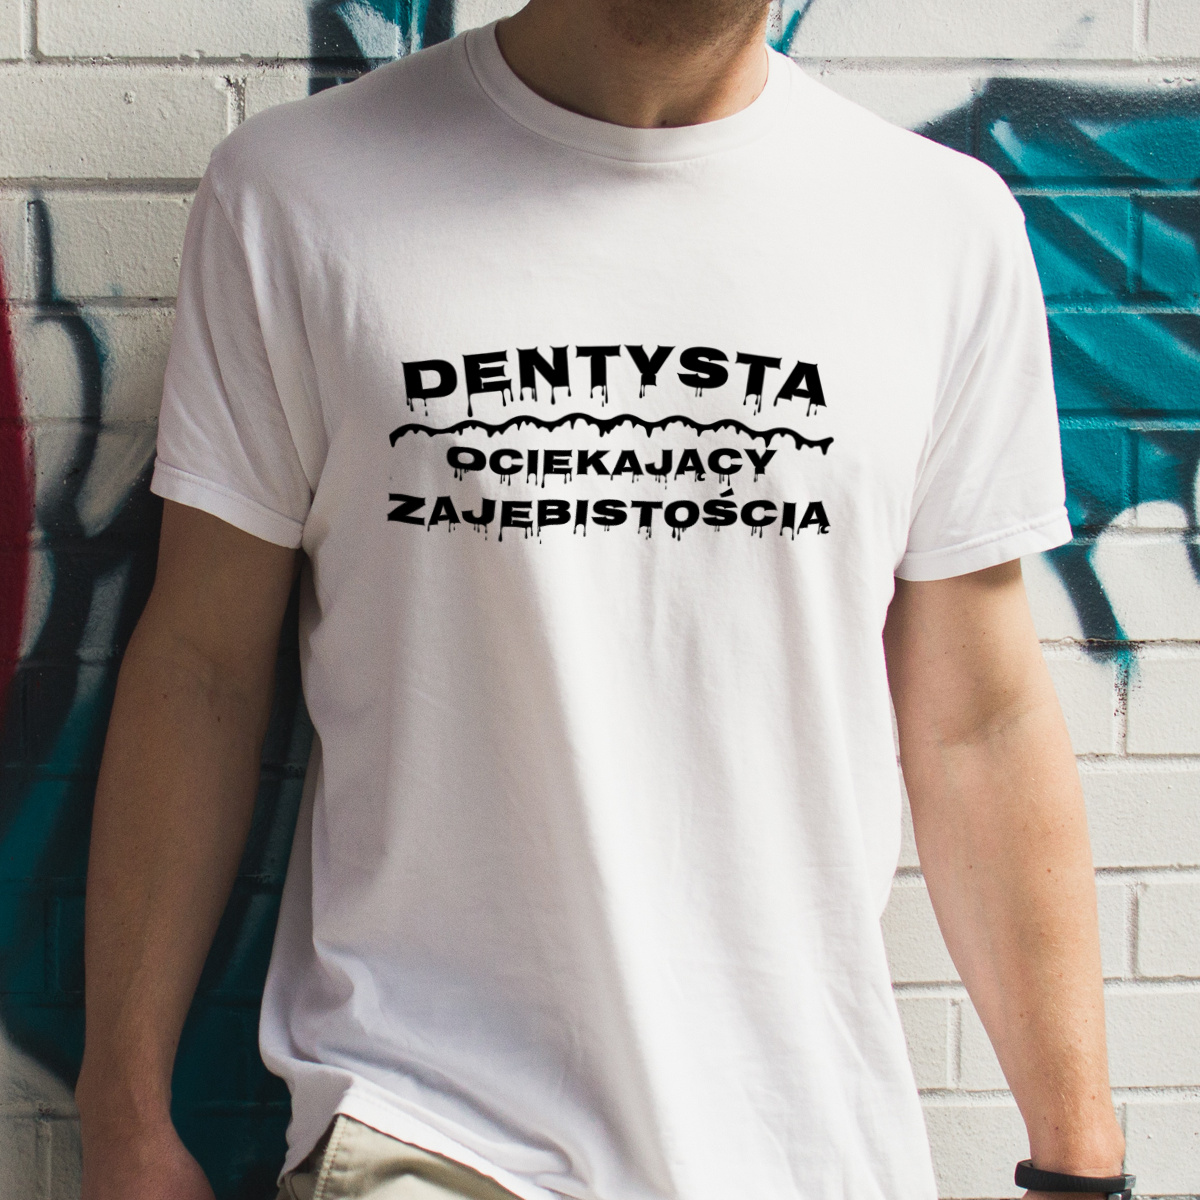 Dentysta Ociekający Zajebistością - Męska Koszulka Biała